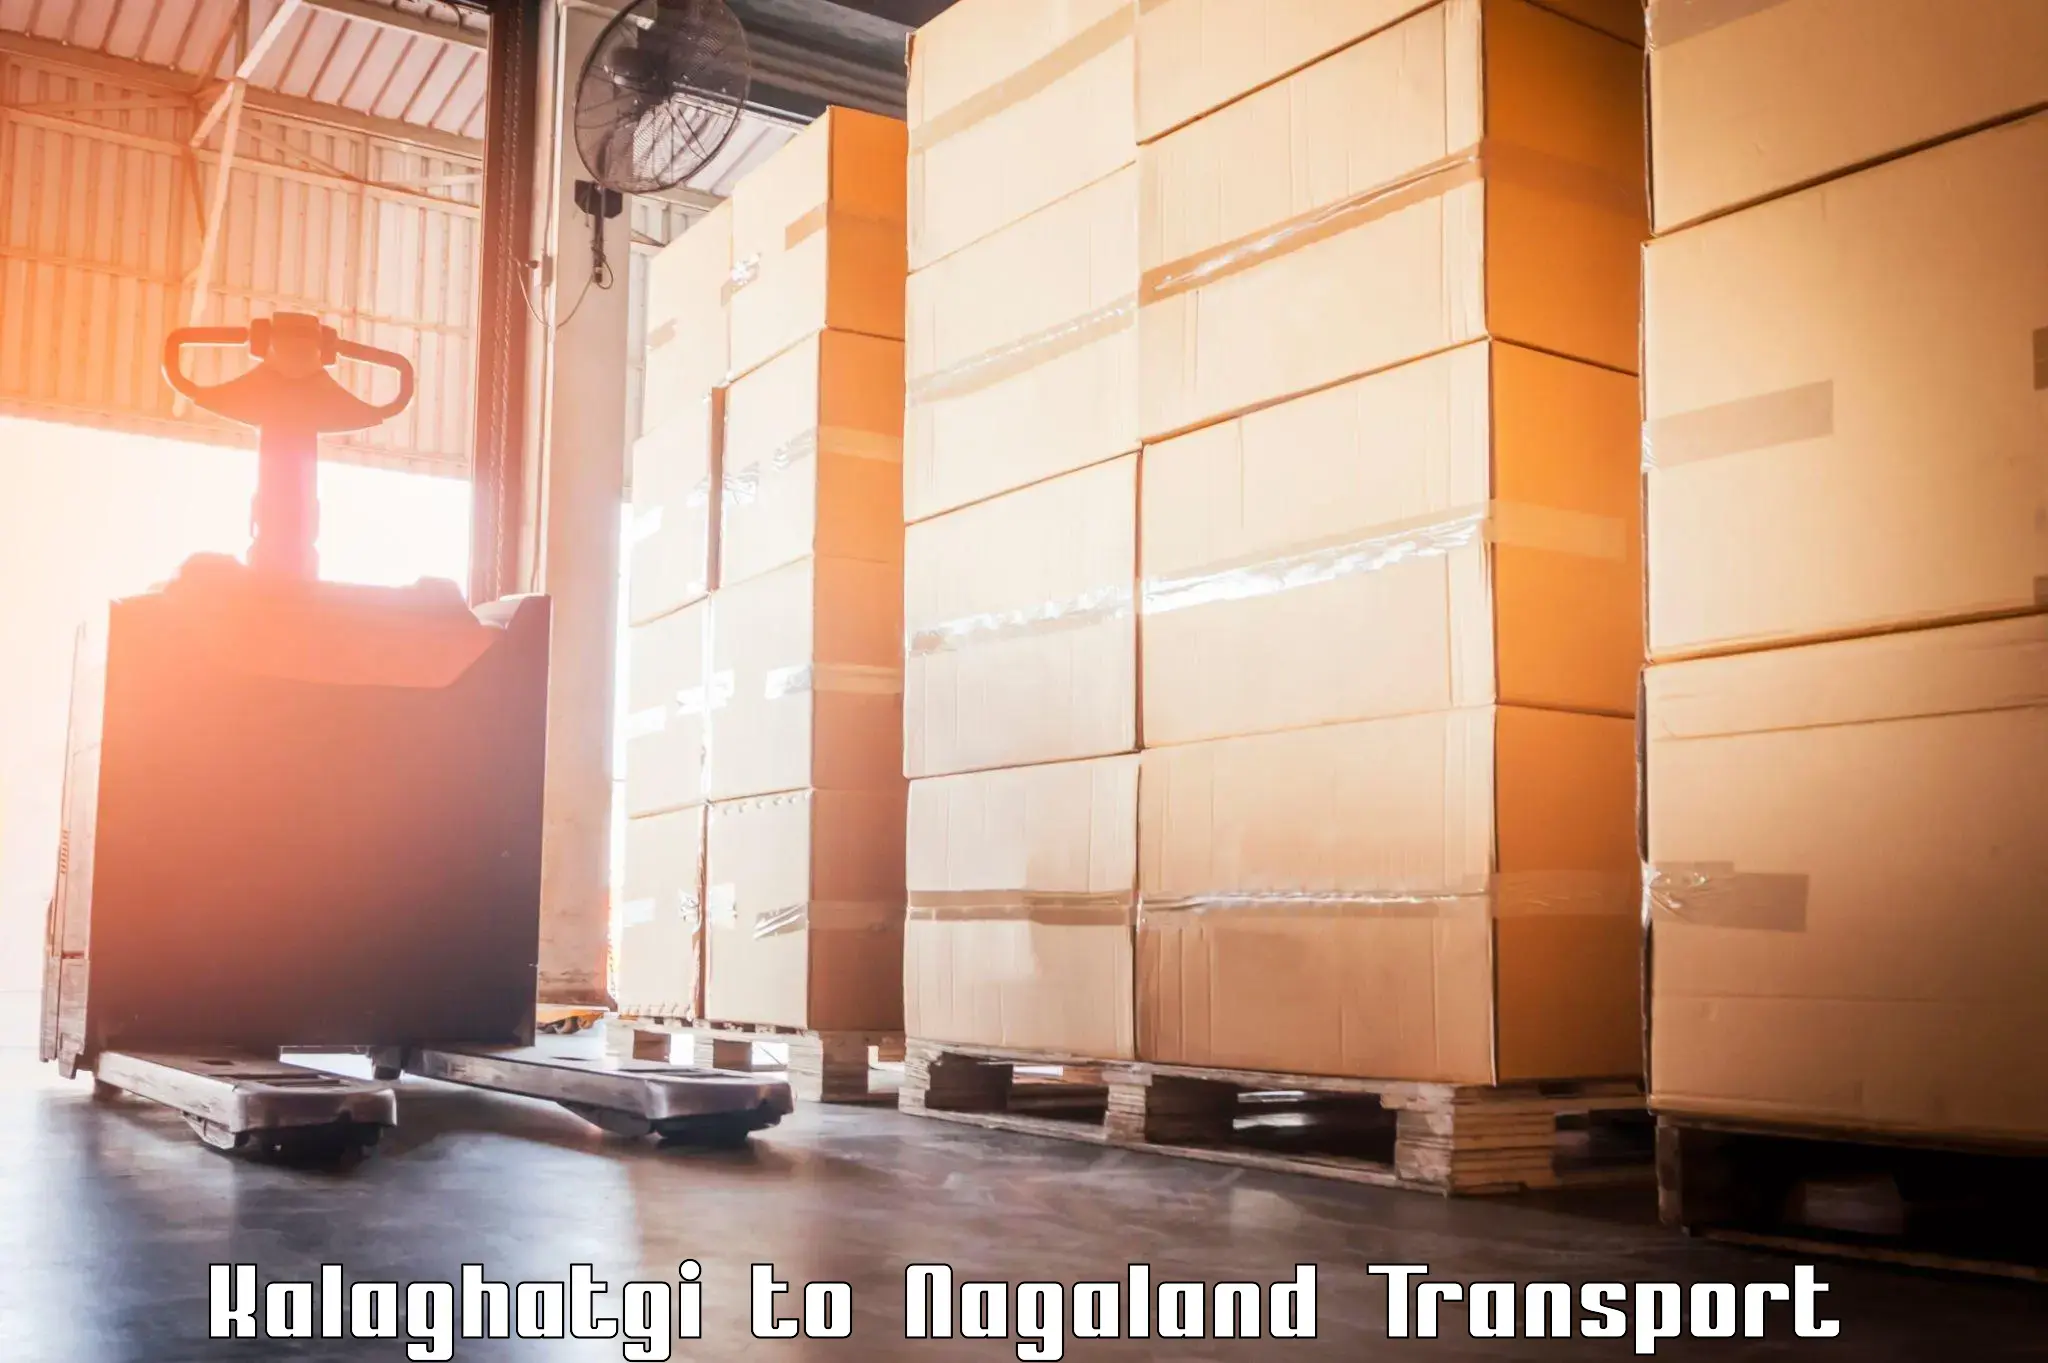 Nearest transport service Kalaghatgi to Longleng